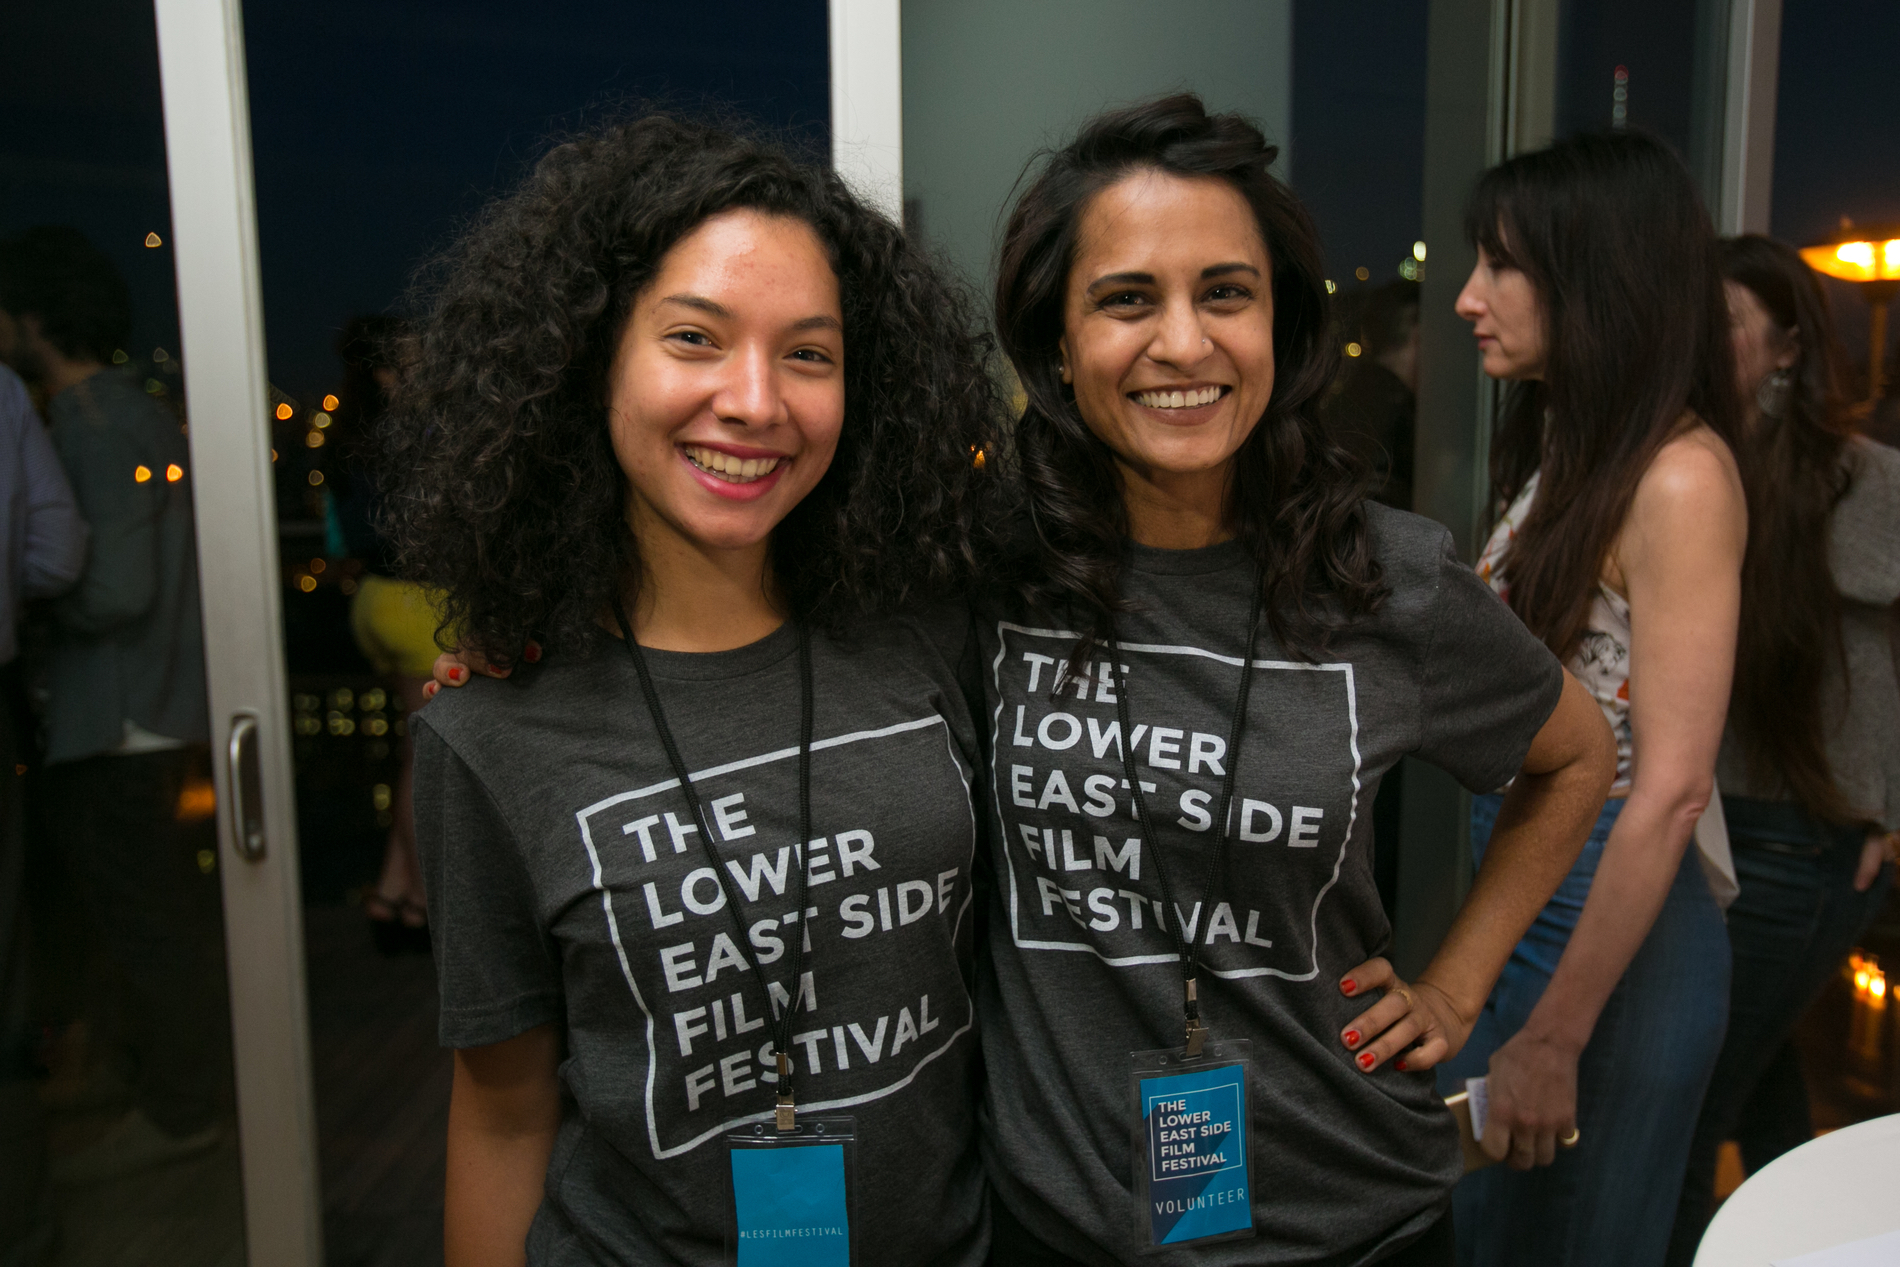 Volunteers at 2016 Lower East Side Film Festival